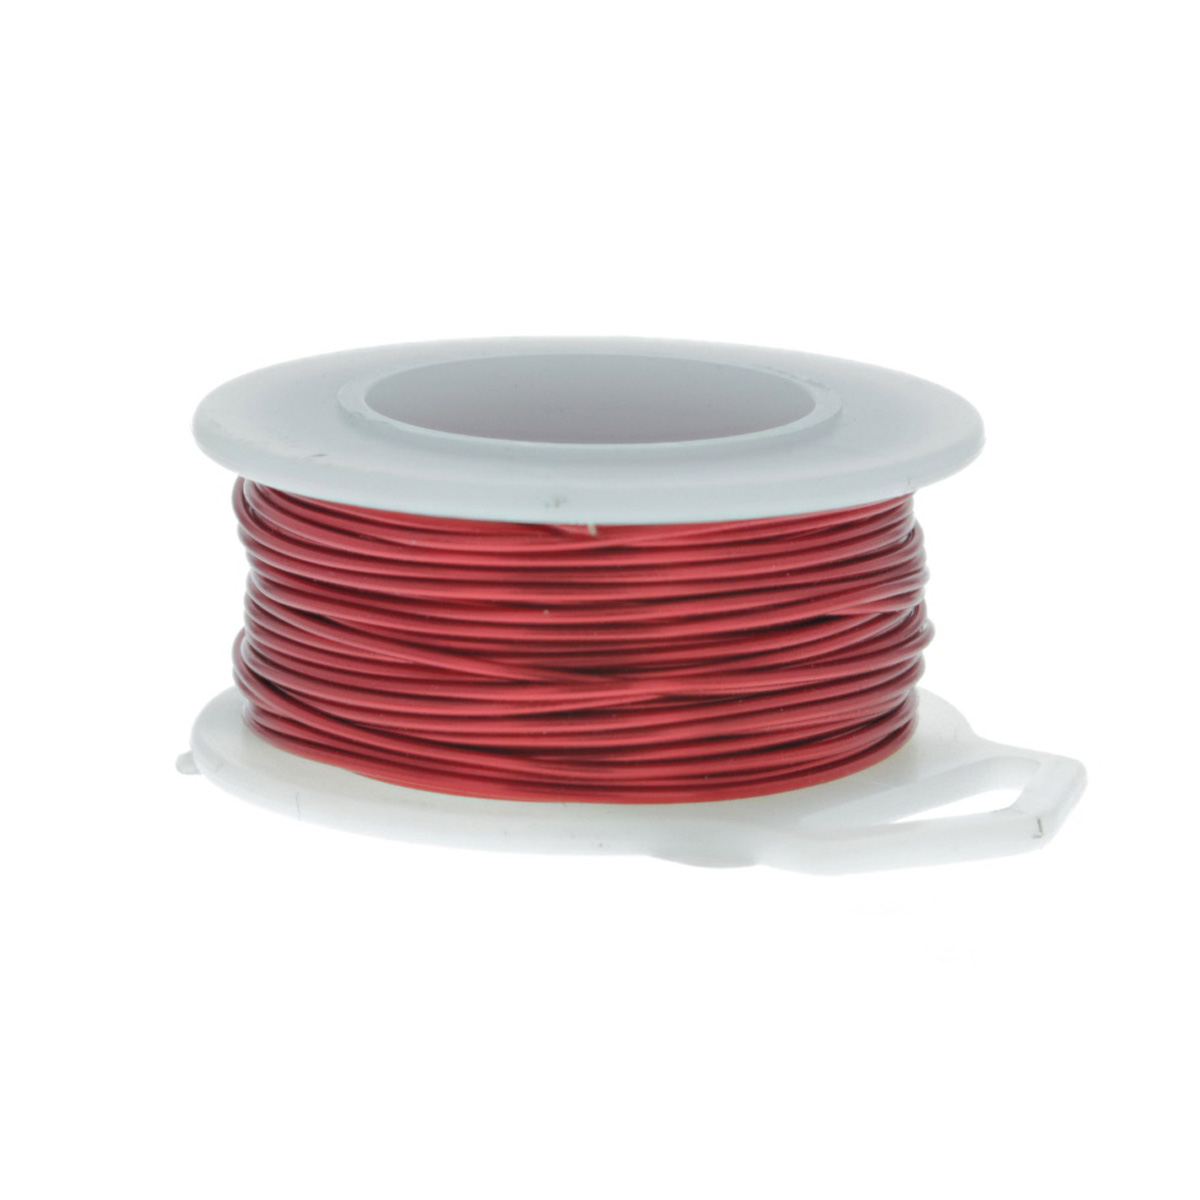 24 Gauge Round Red Enameled Craft Wire - 60 ft: Wire Jewelry, Wire Wrap  Tutorials